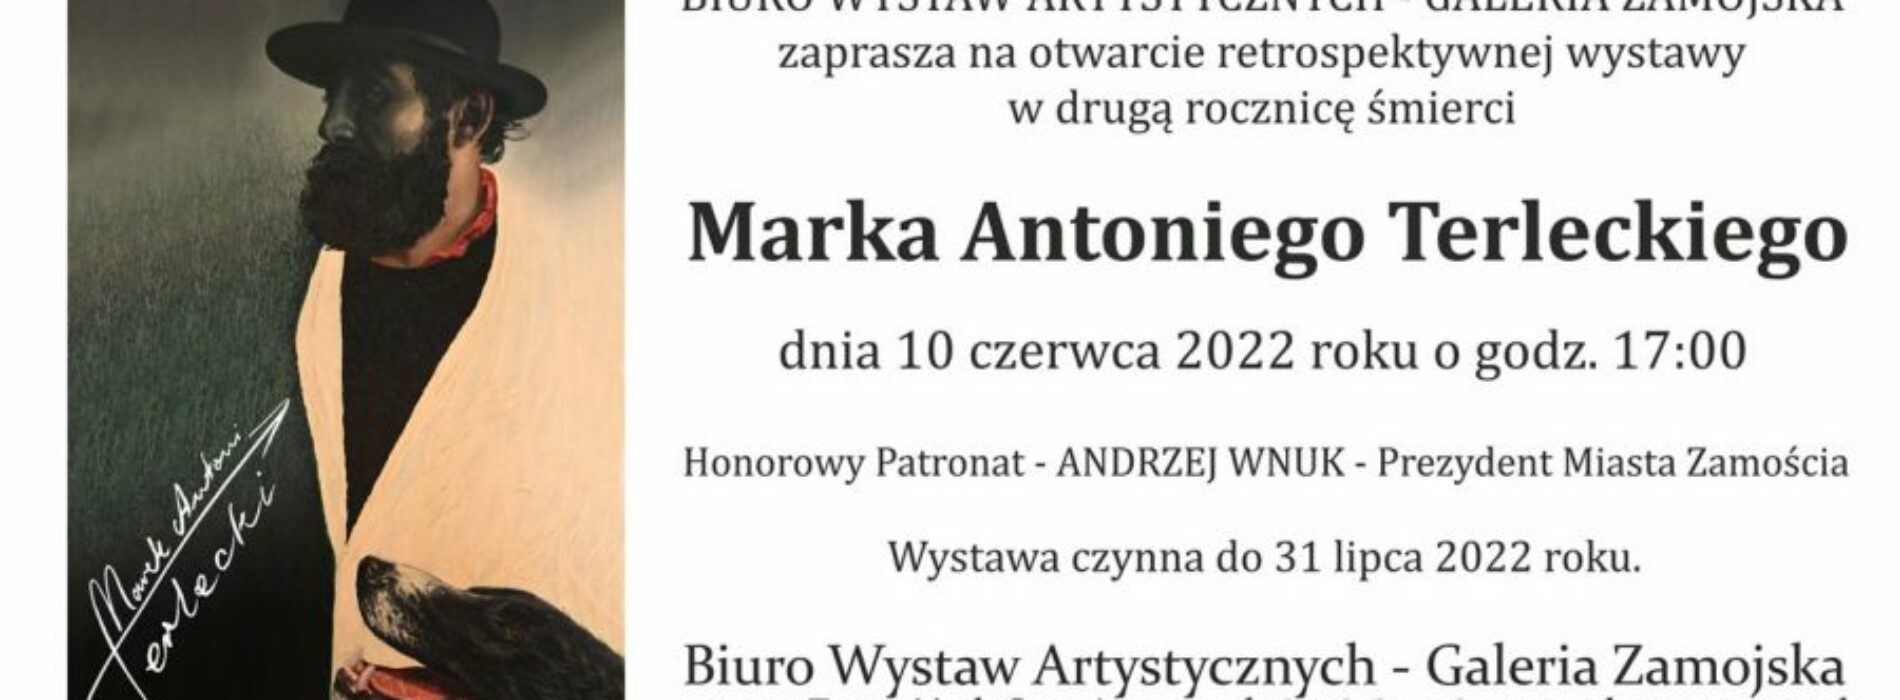 Marek Antoni Terlecki – „Wystawa retrospektywna w drugą rocznicę śmierci artysty”